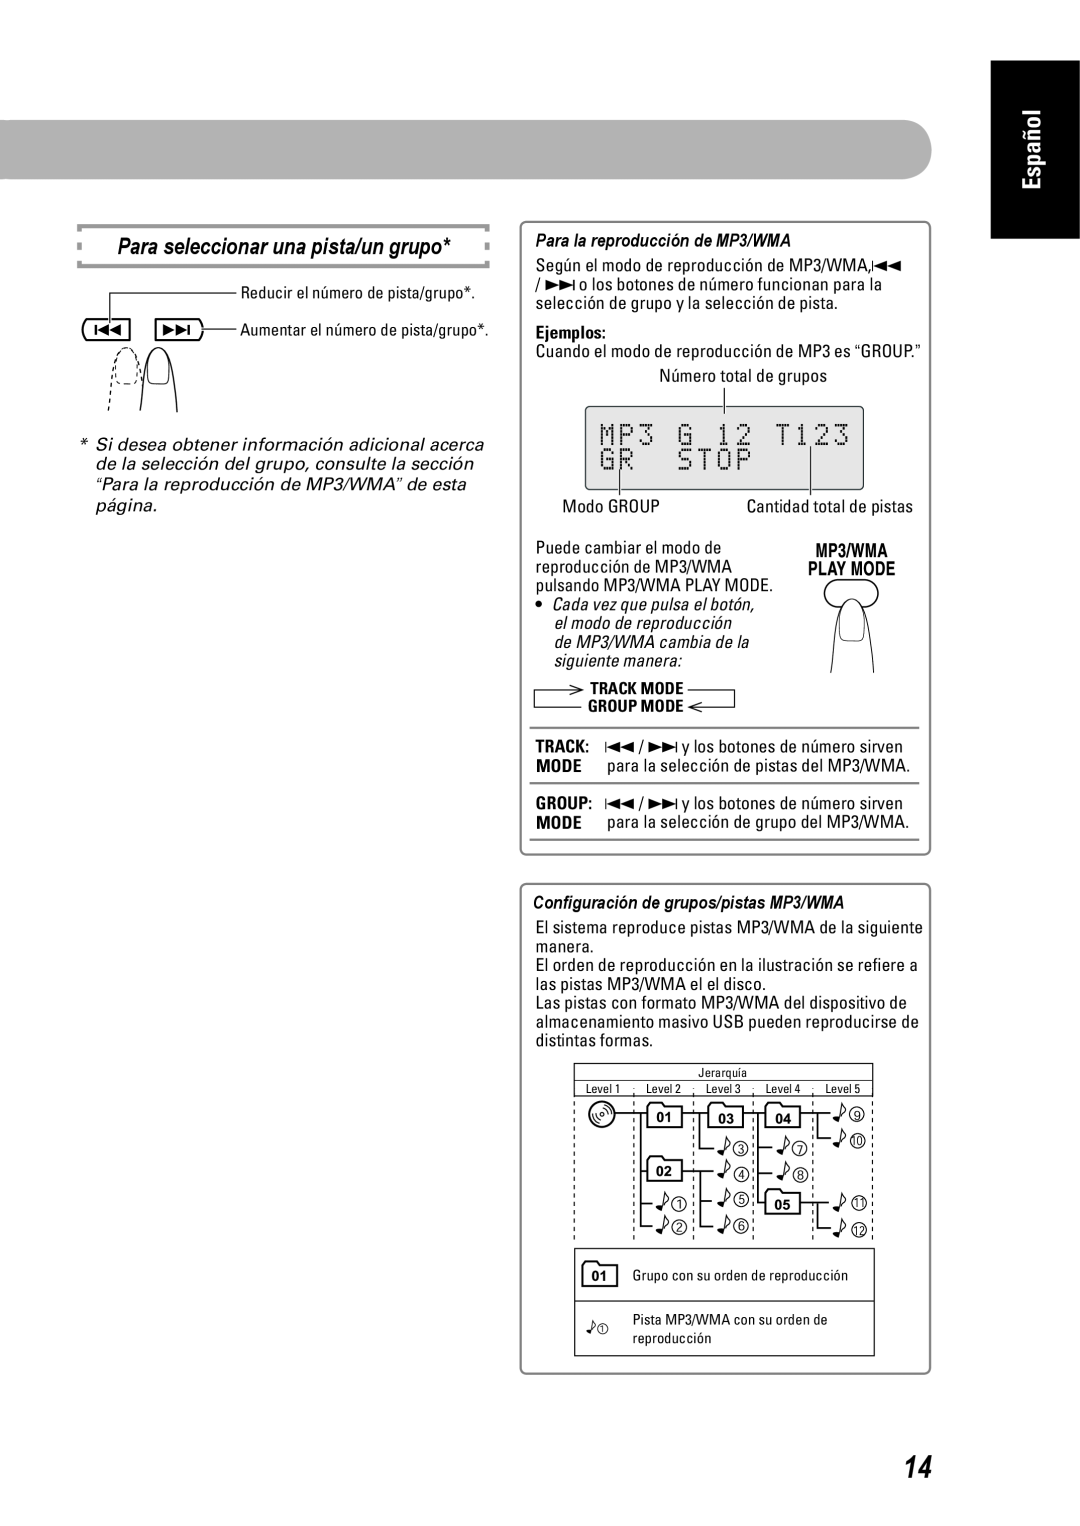 JVC SP-UXEP25 manual Para la reproducción de MP3/WMA, Conﬁguración de grupos/pistas MP3/WMA, Track Mode Group Mode, Español 